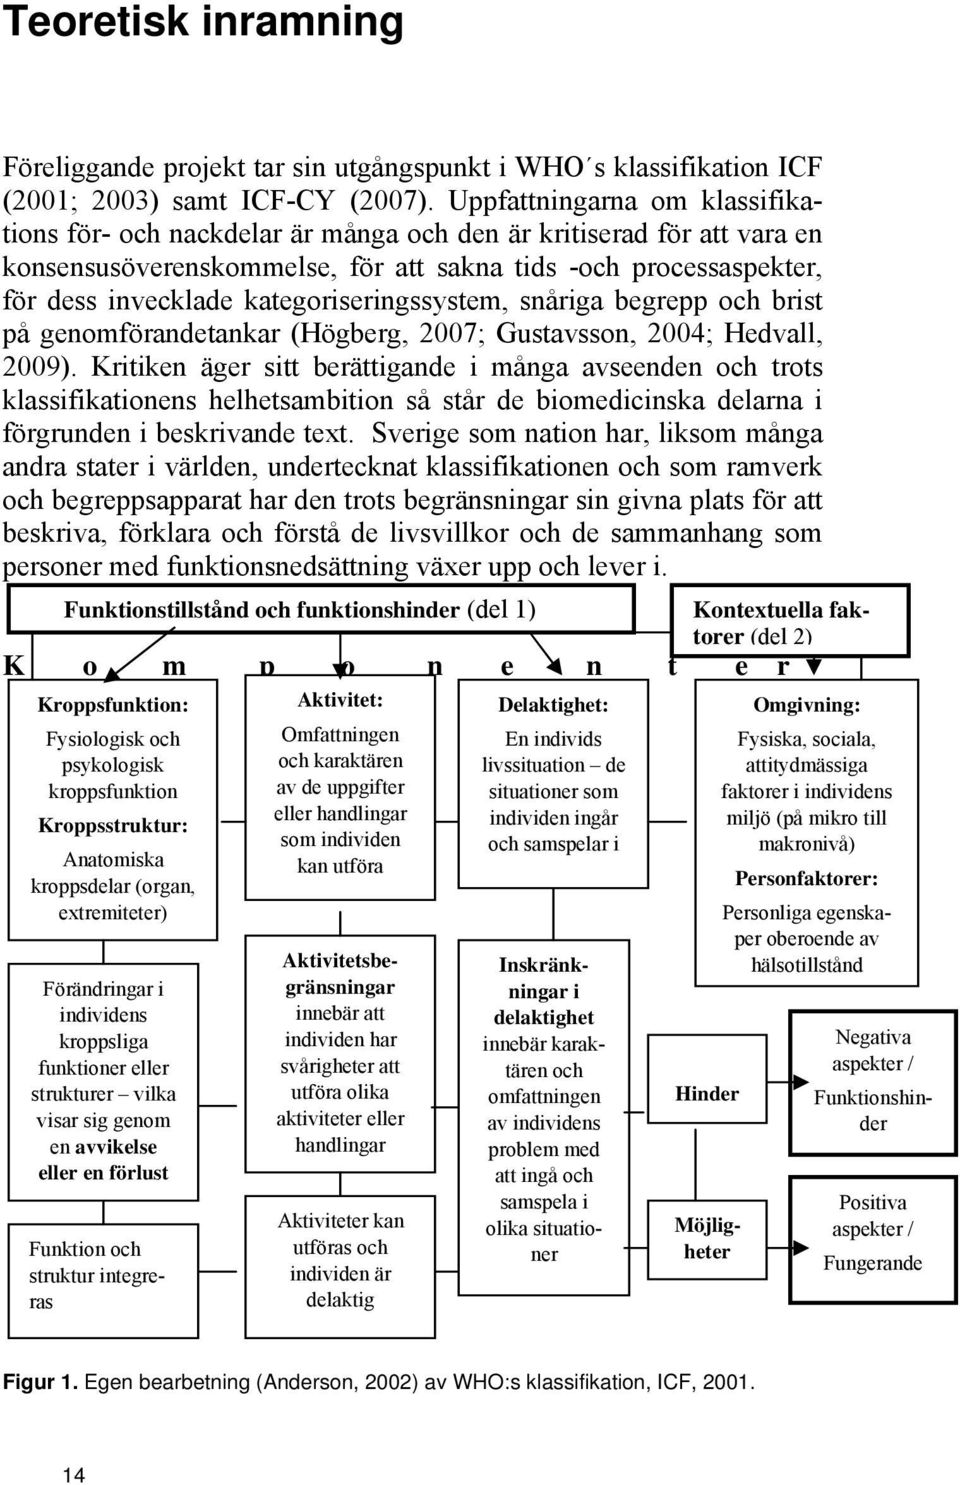 kategoriseringssystem, snåriga begrepp och brist på genomförandetankar (Högberg, 2007; Gustavsson, 2004; Hedvall, 2009).